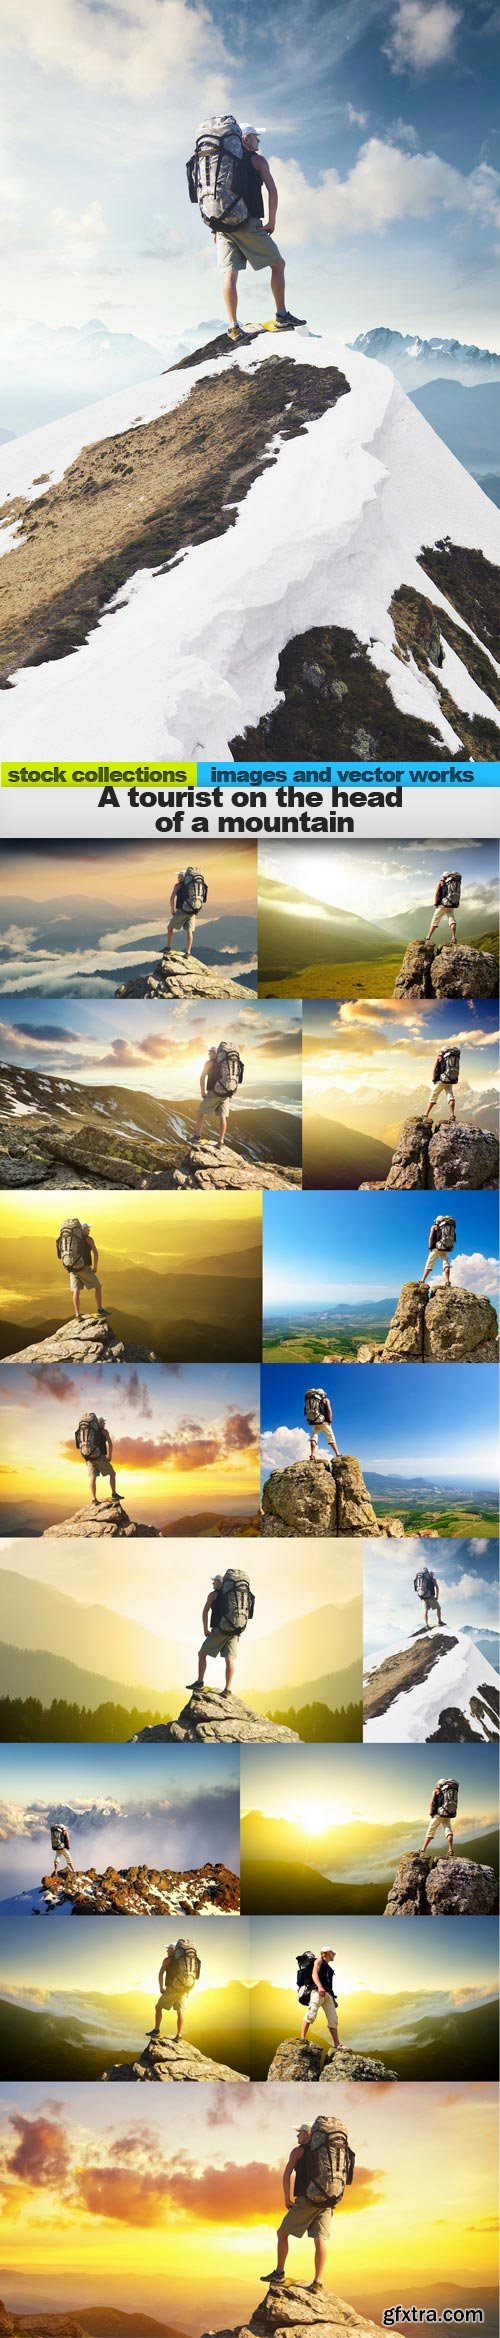 A tourist on the head of a mountain, 15 x UHQ JPEG